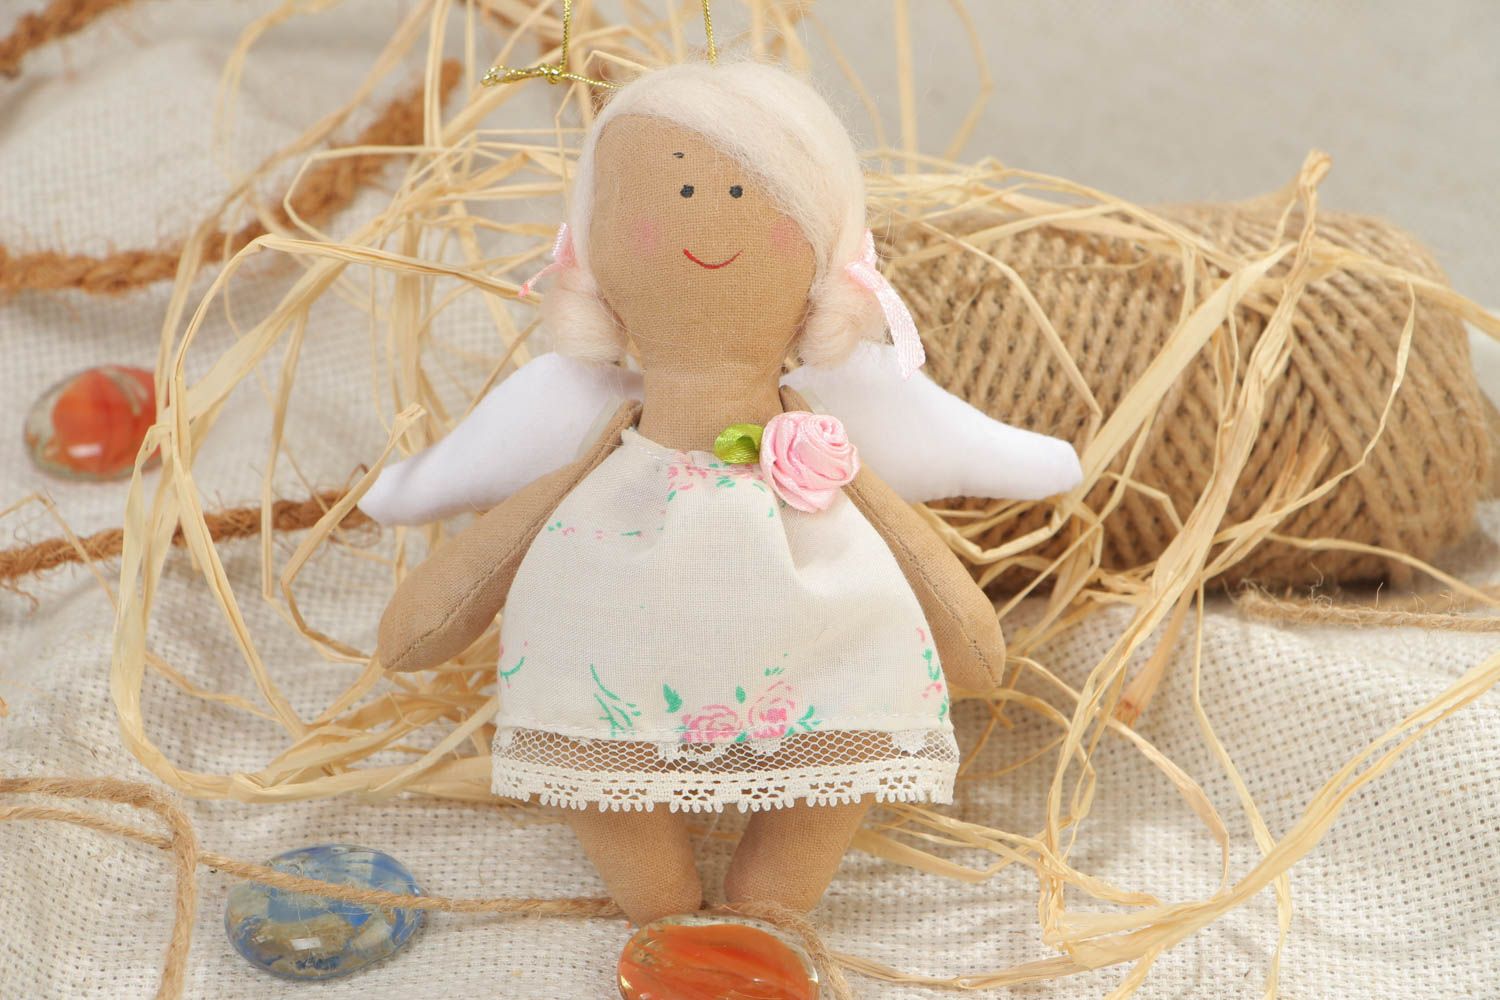 Игрушка кукла из ткани в виде ангела в белом платье маленькая ручной работы фото 1